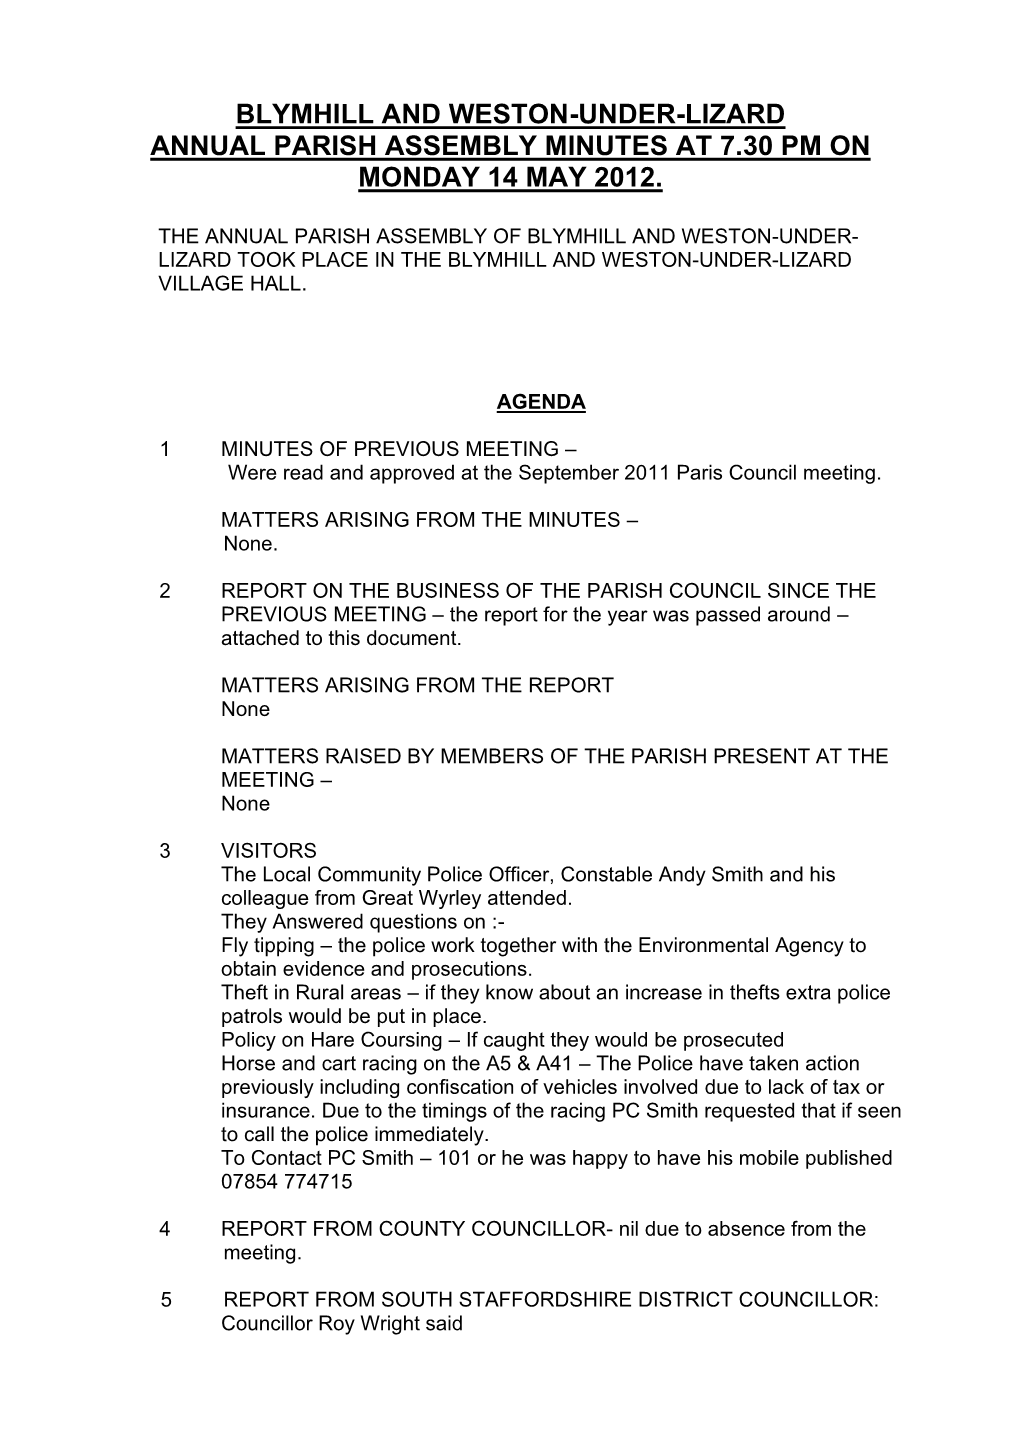 MAY 2012 Parish Assembly Minutes